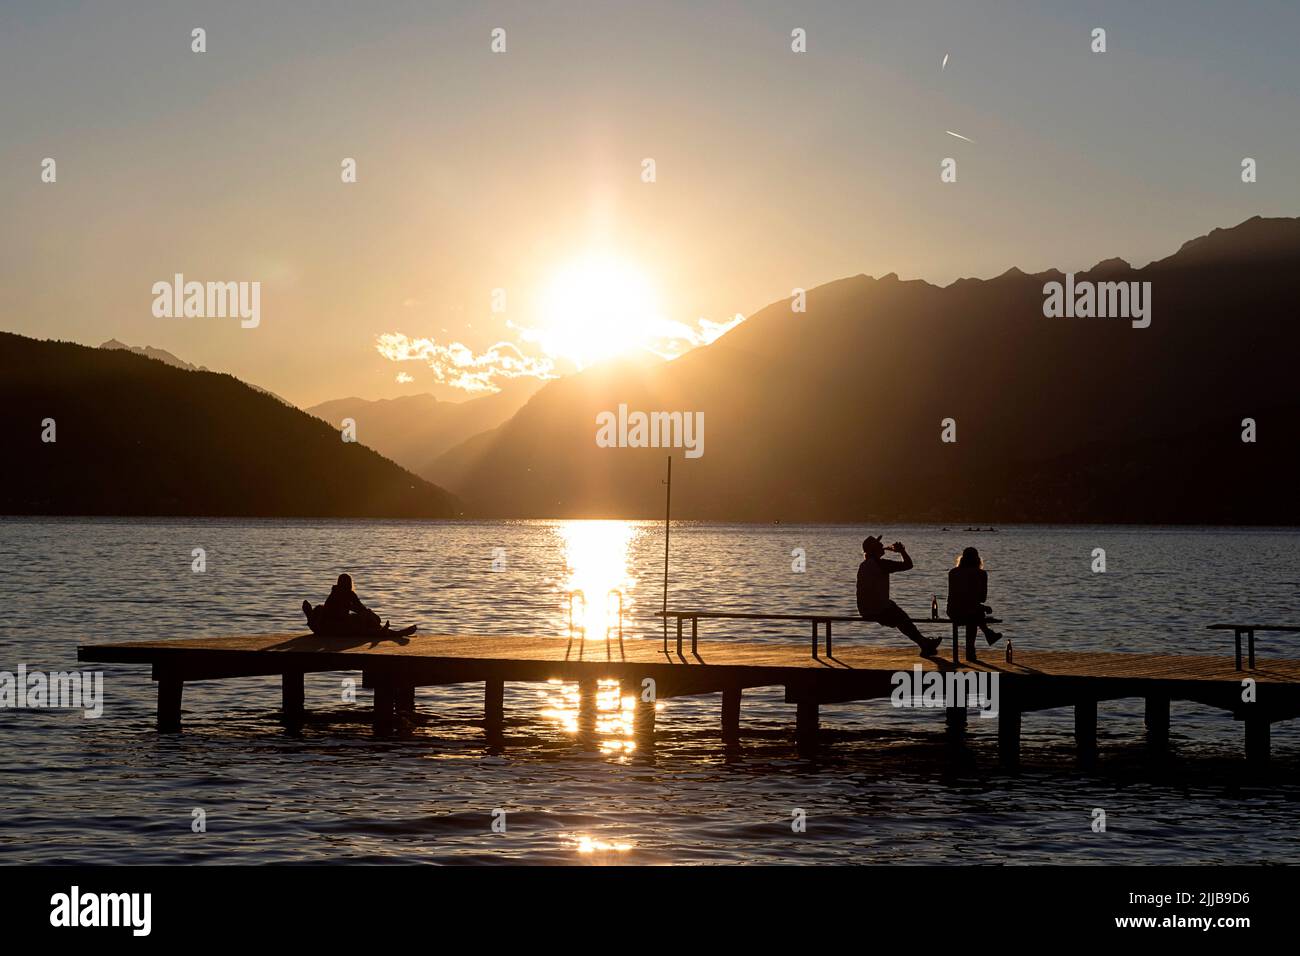 Gli abitanti del luogo si godono alla fine di una bella giornata estiva su un molo di legno a Millstätter vedere il lago in Carinzia, Austria Foto Stock